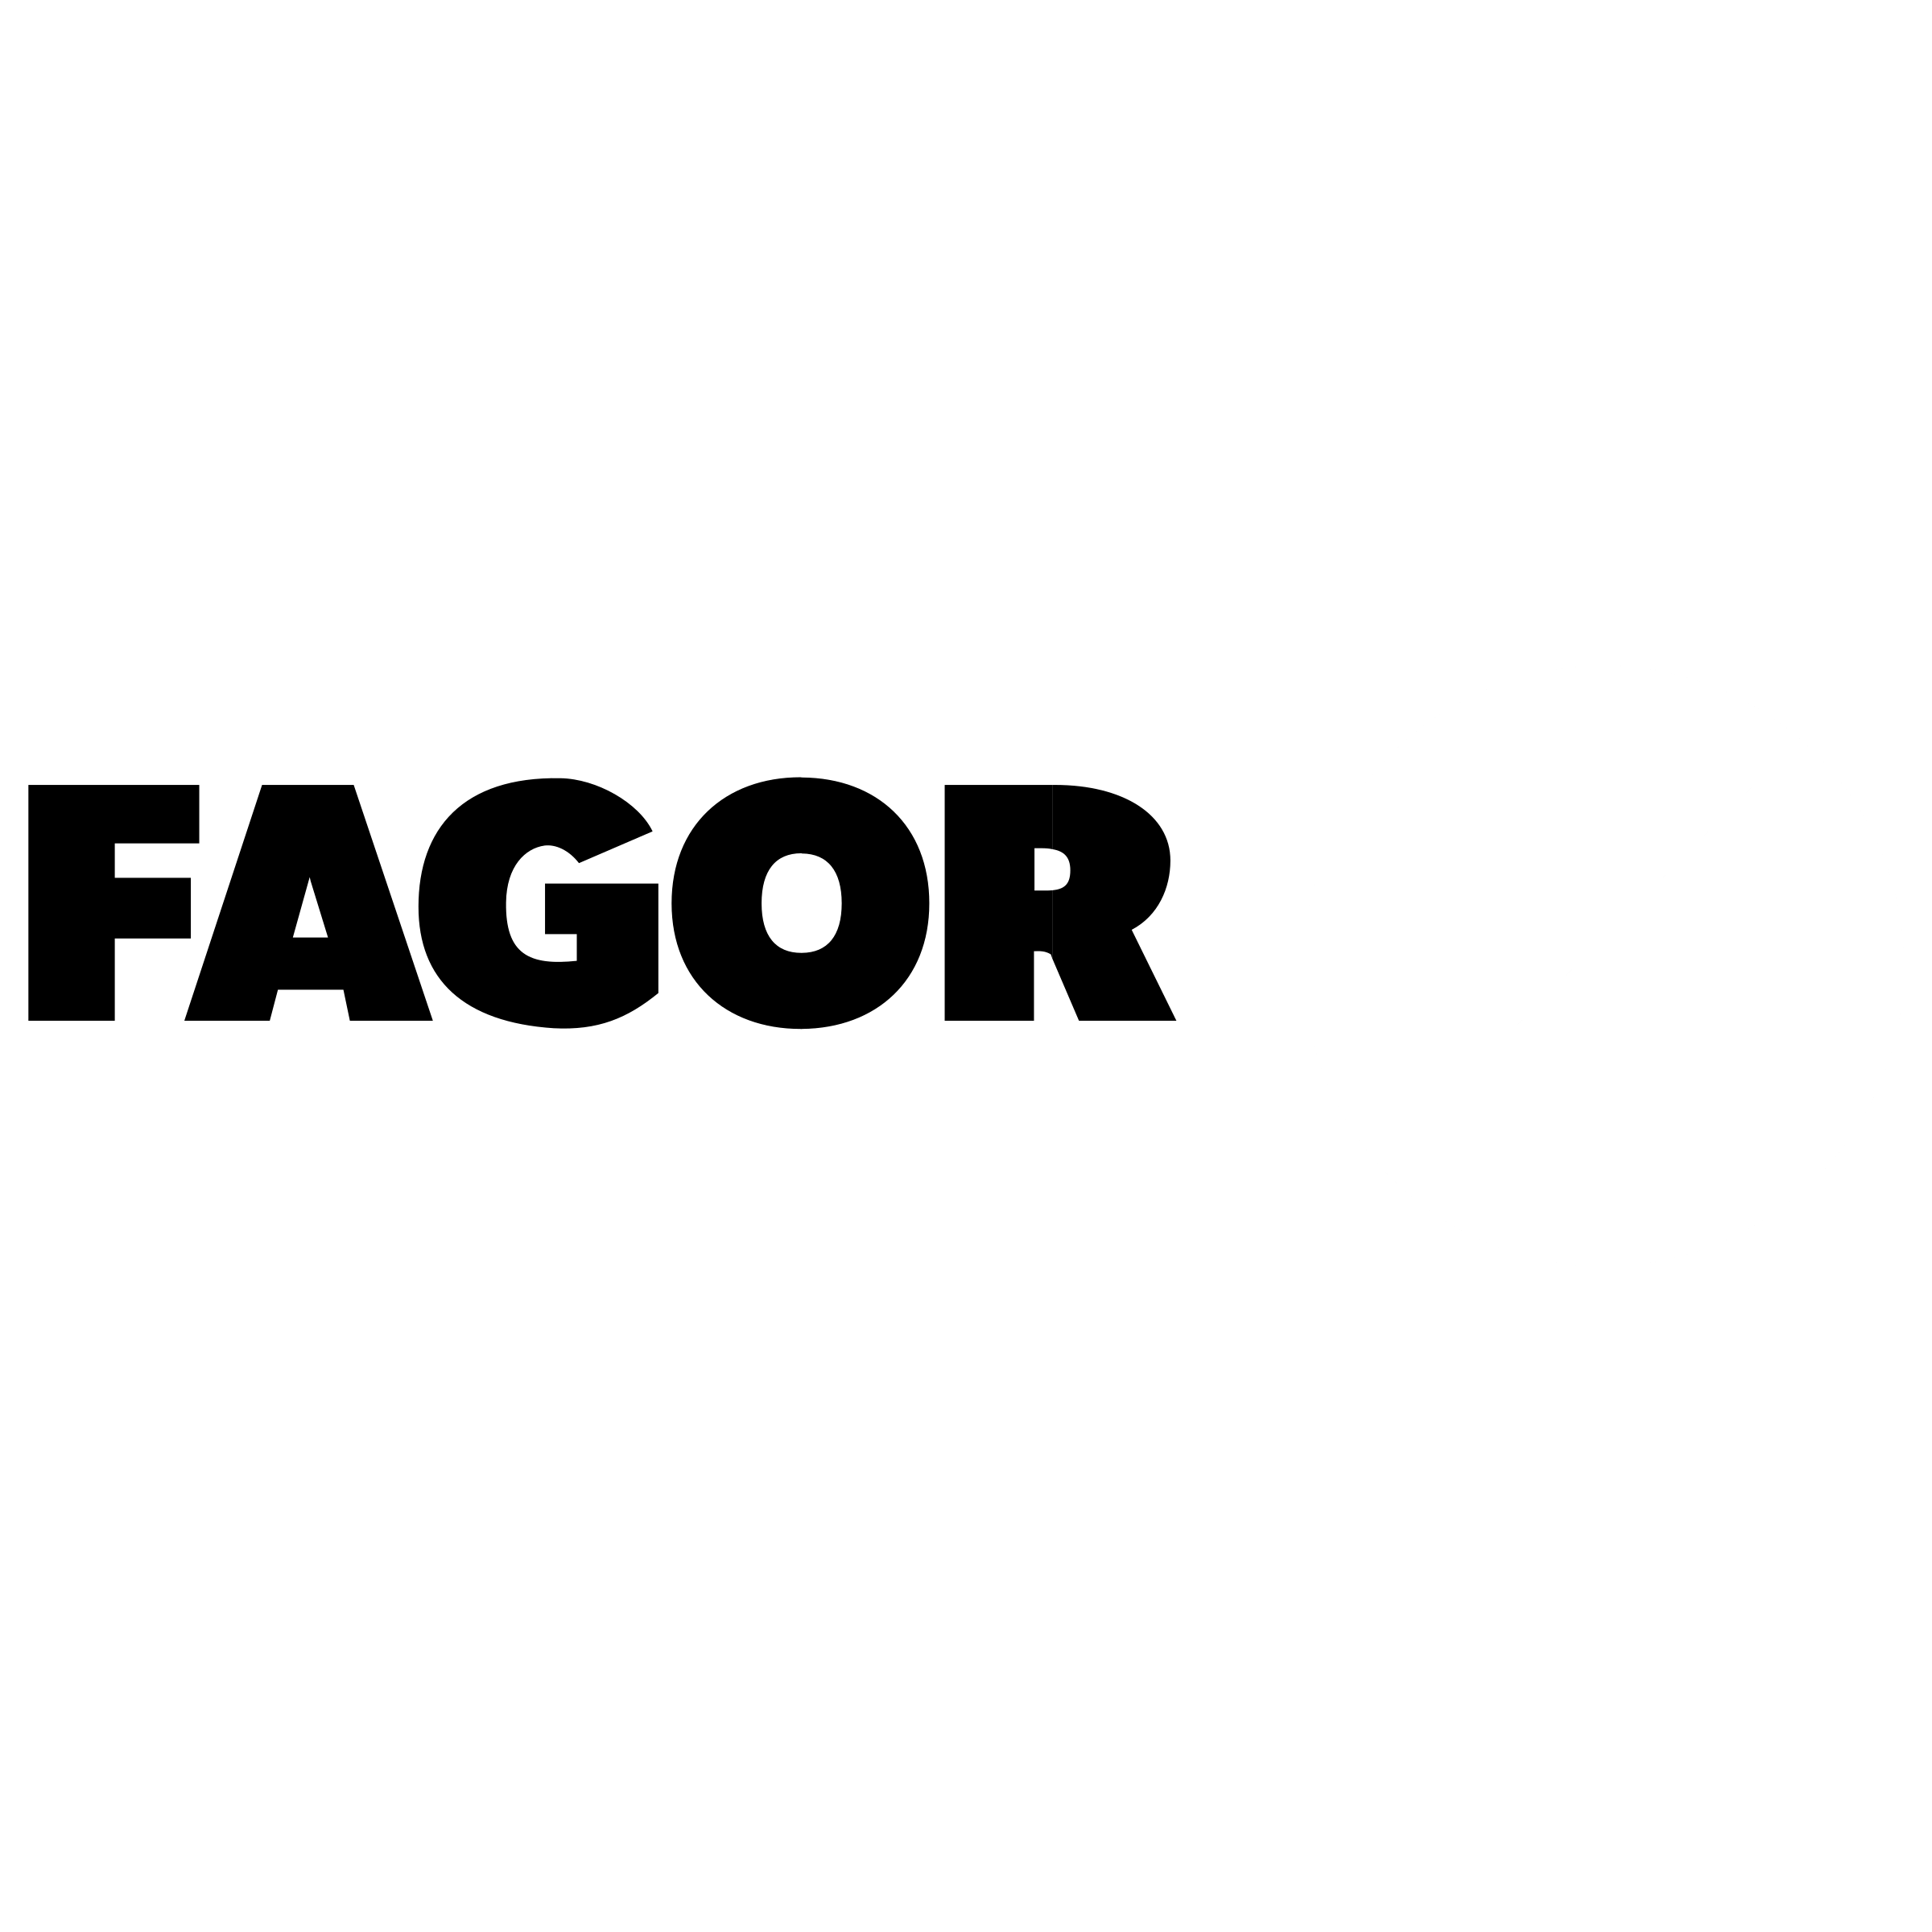 Fagor Logo - Fagor Logo PNG Transparent & SVG Vector - Freebie Supply